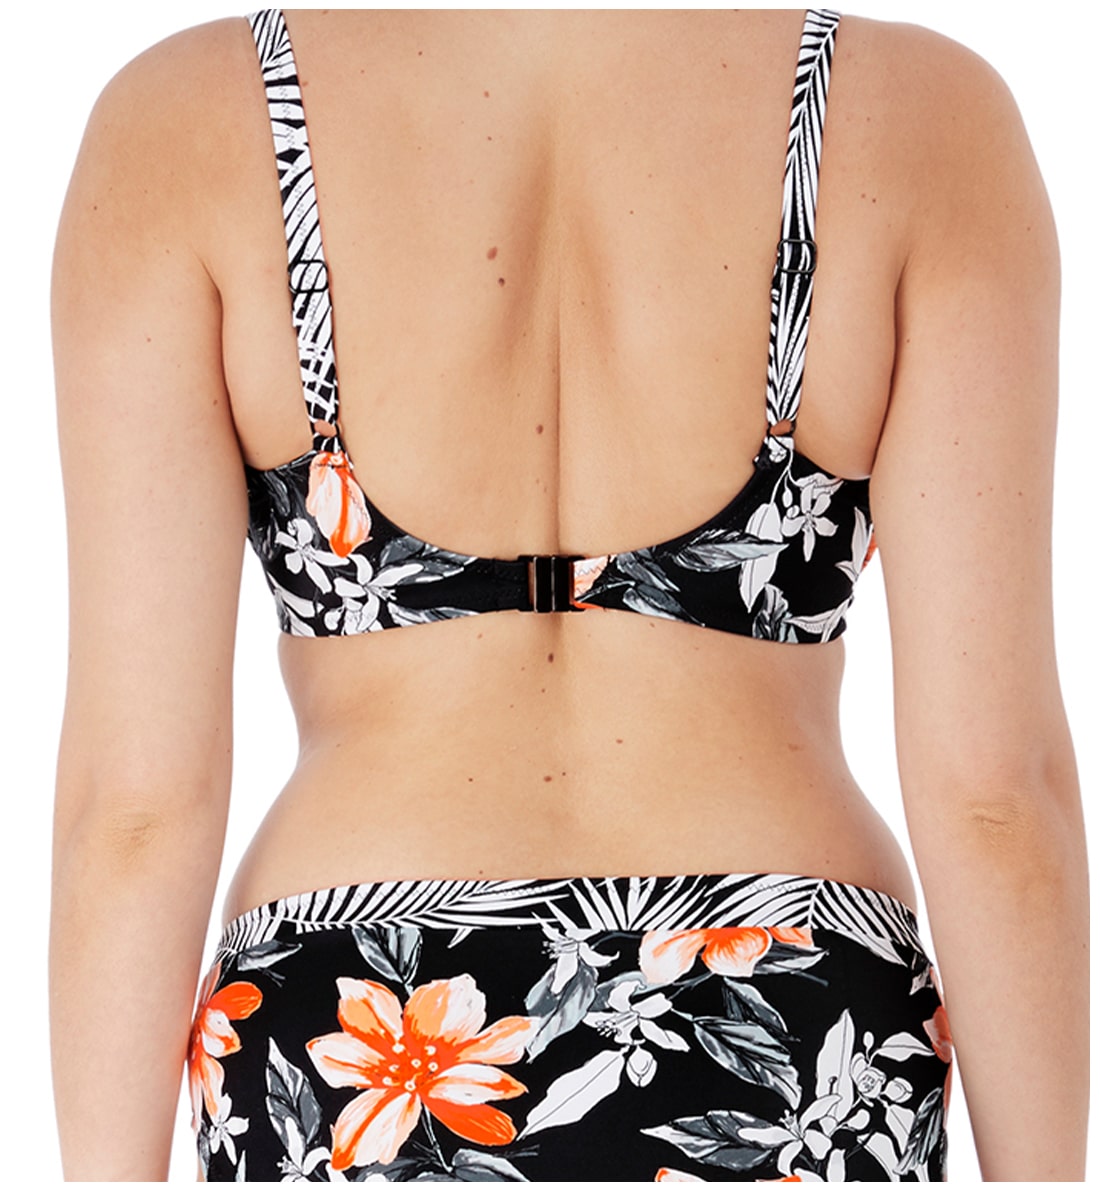 Fantasie Port Maria Gathered Full Cup Underwire Bikini Top (6890),32E,Black - Black,32E